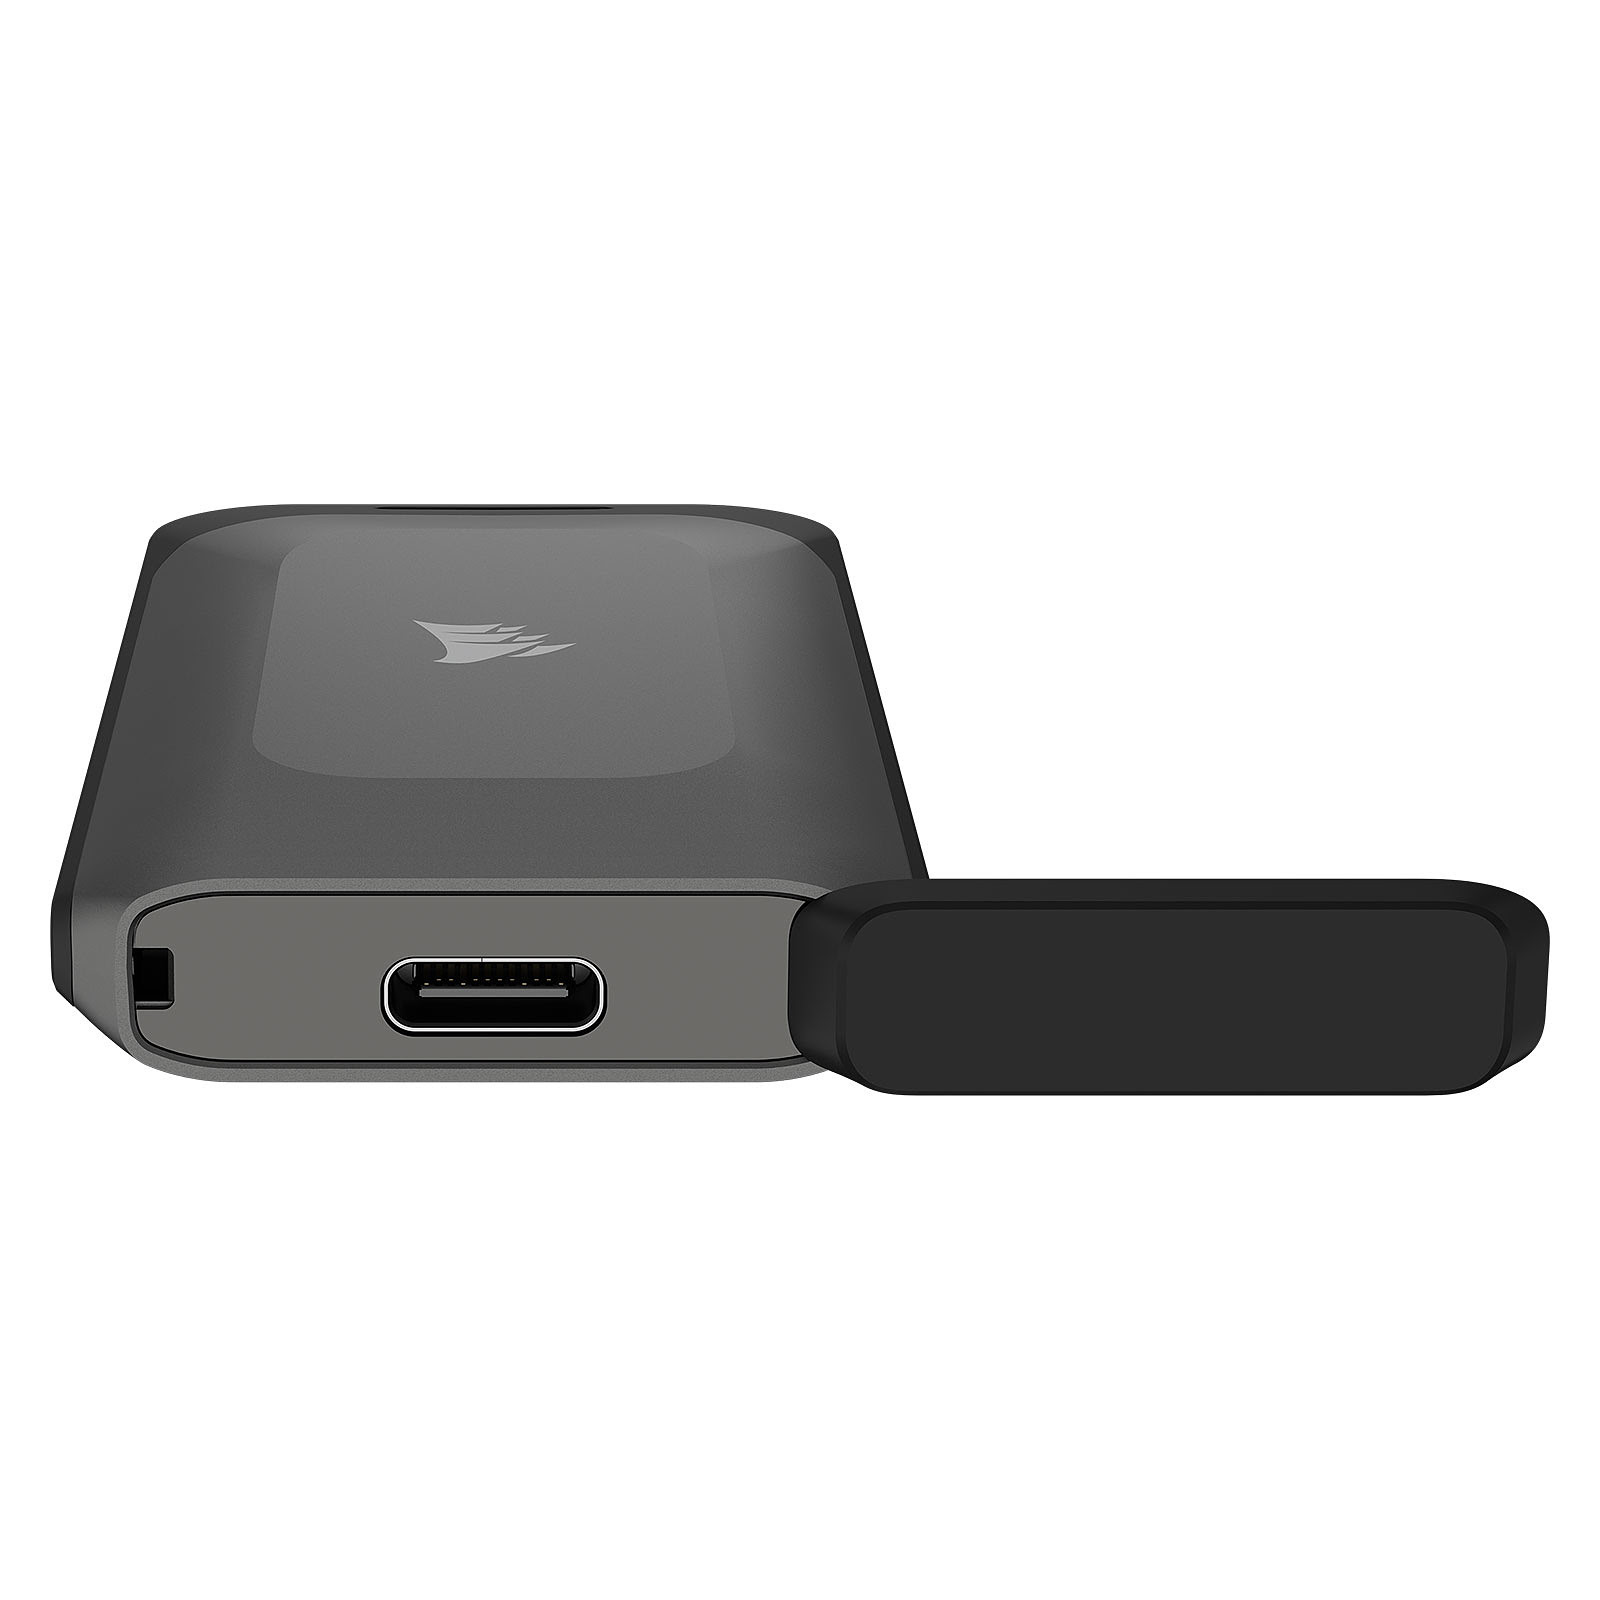 Samsung T9 SSD 2To noir USB-C - Disque dur externe - Achat et prix